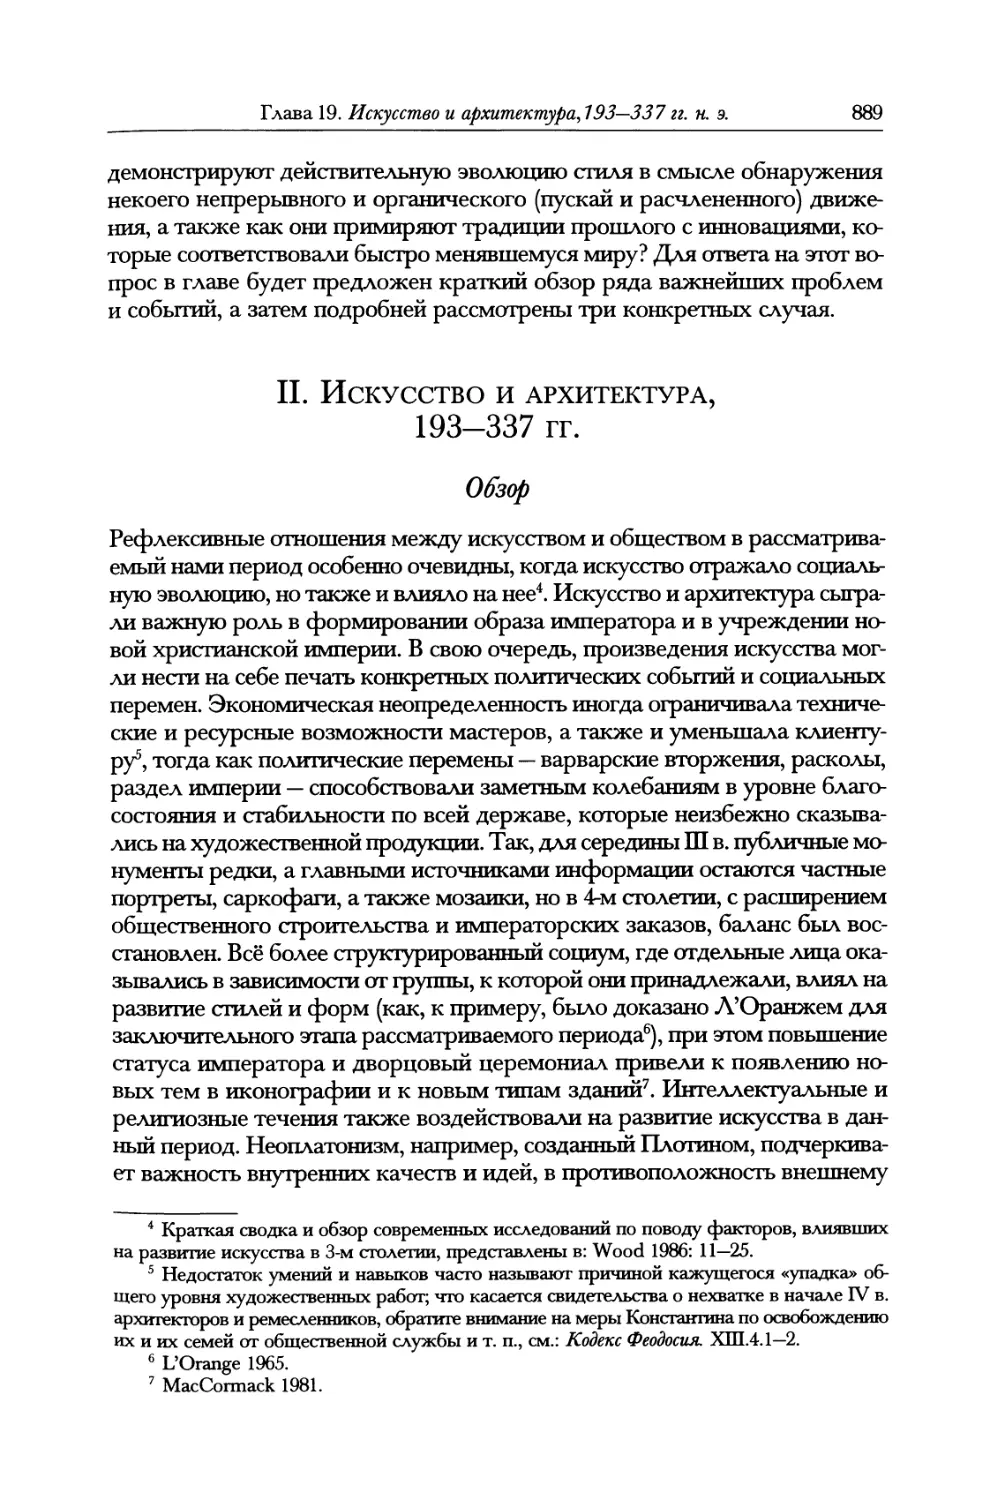 II. Искусство и архитектура, 193—337 гг.